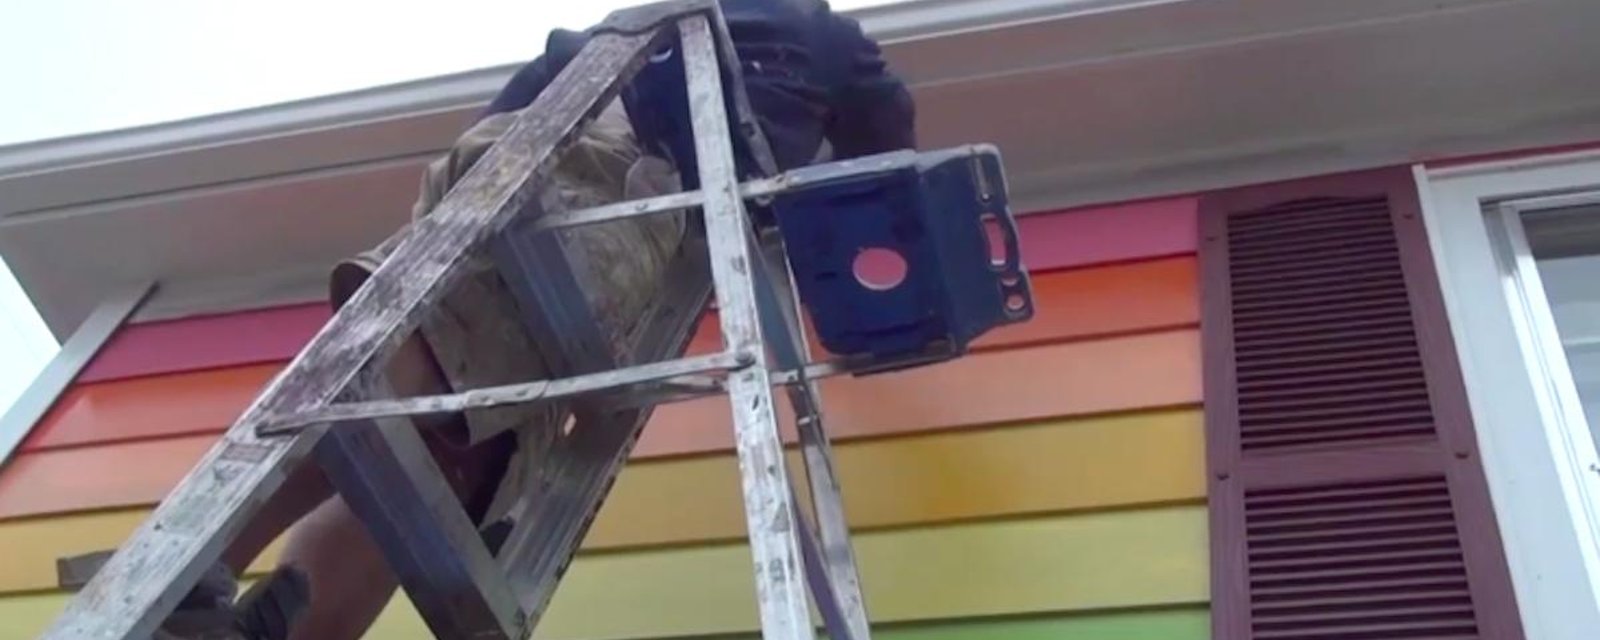 Un homme peint une maison aux couleurs de l’arc-en-ciel et ça ne plait pas à tout le monde